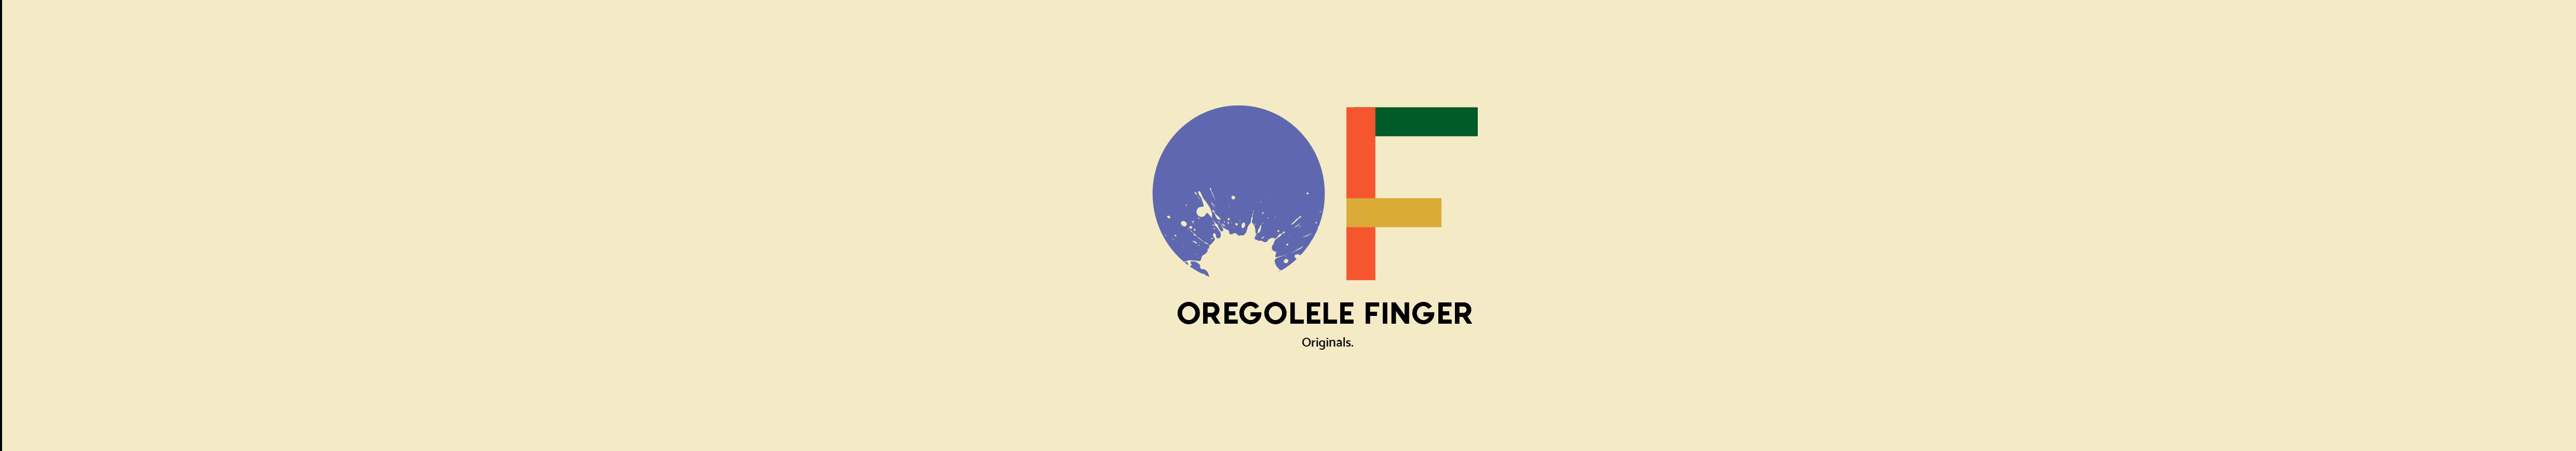 Oregolelele Finger's profile banner